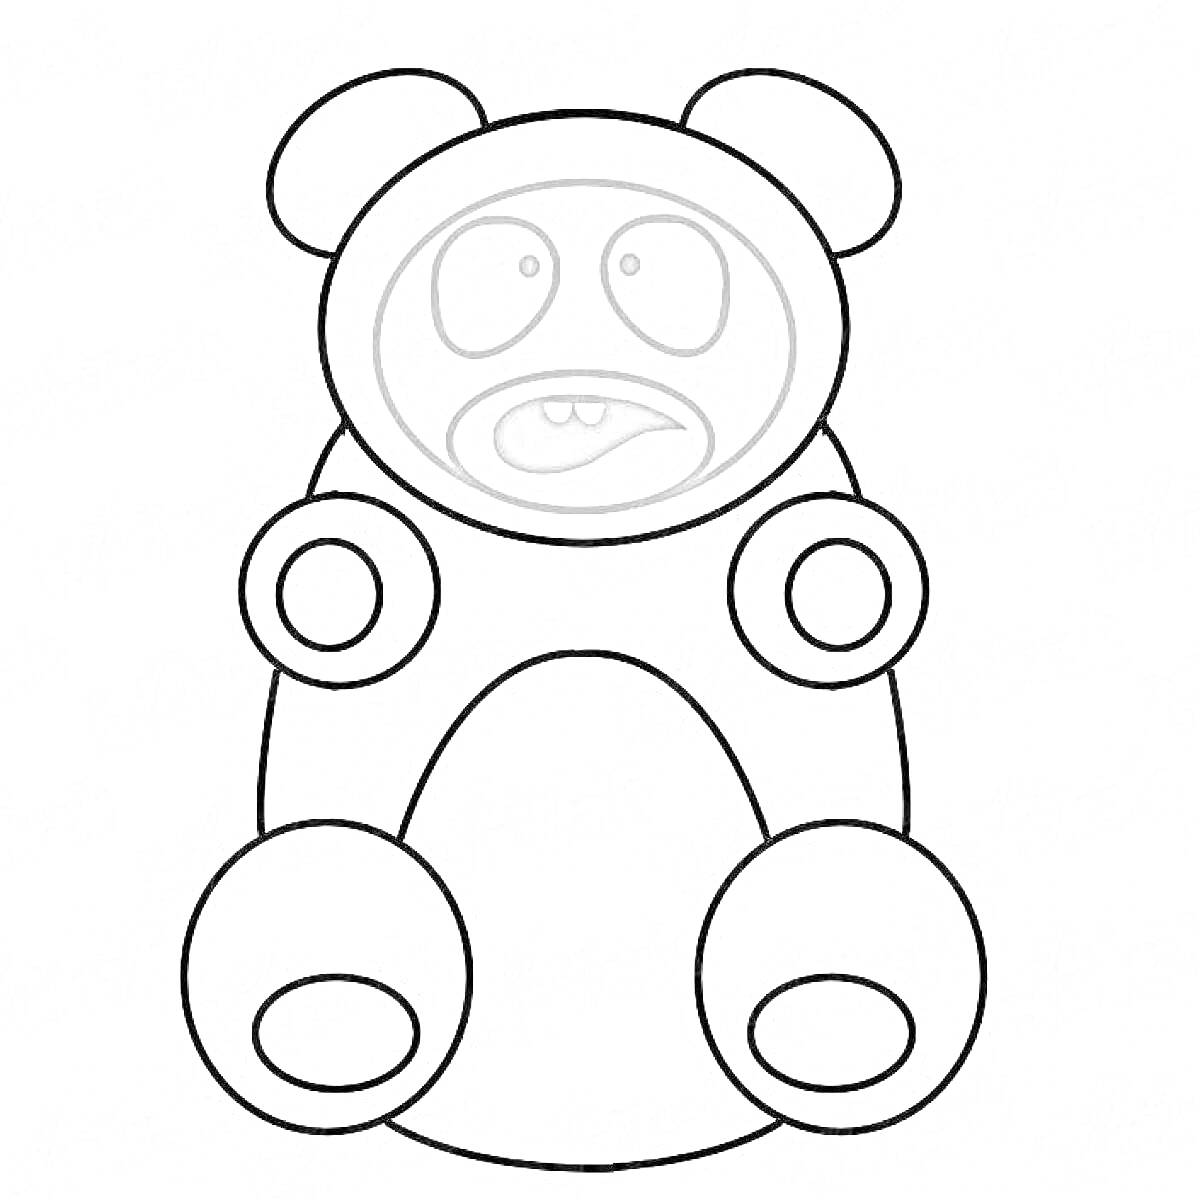 Валера желейный медведь с круглыми лапами и округлыми ушами, с выражением удивления на лице, рот приоткрыт, глаза круглые внутри - зрачки, поднимающиеся вверх